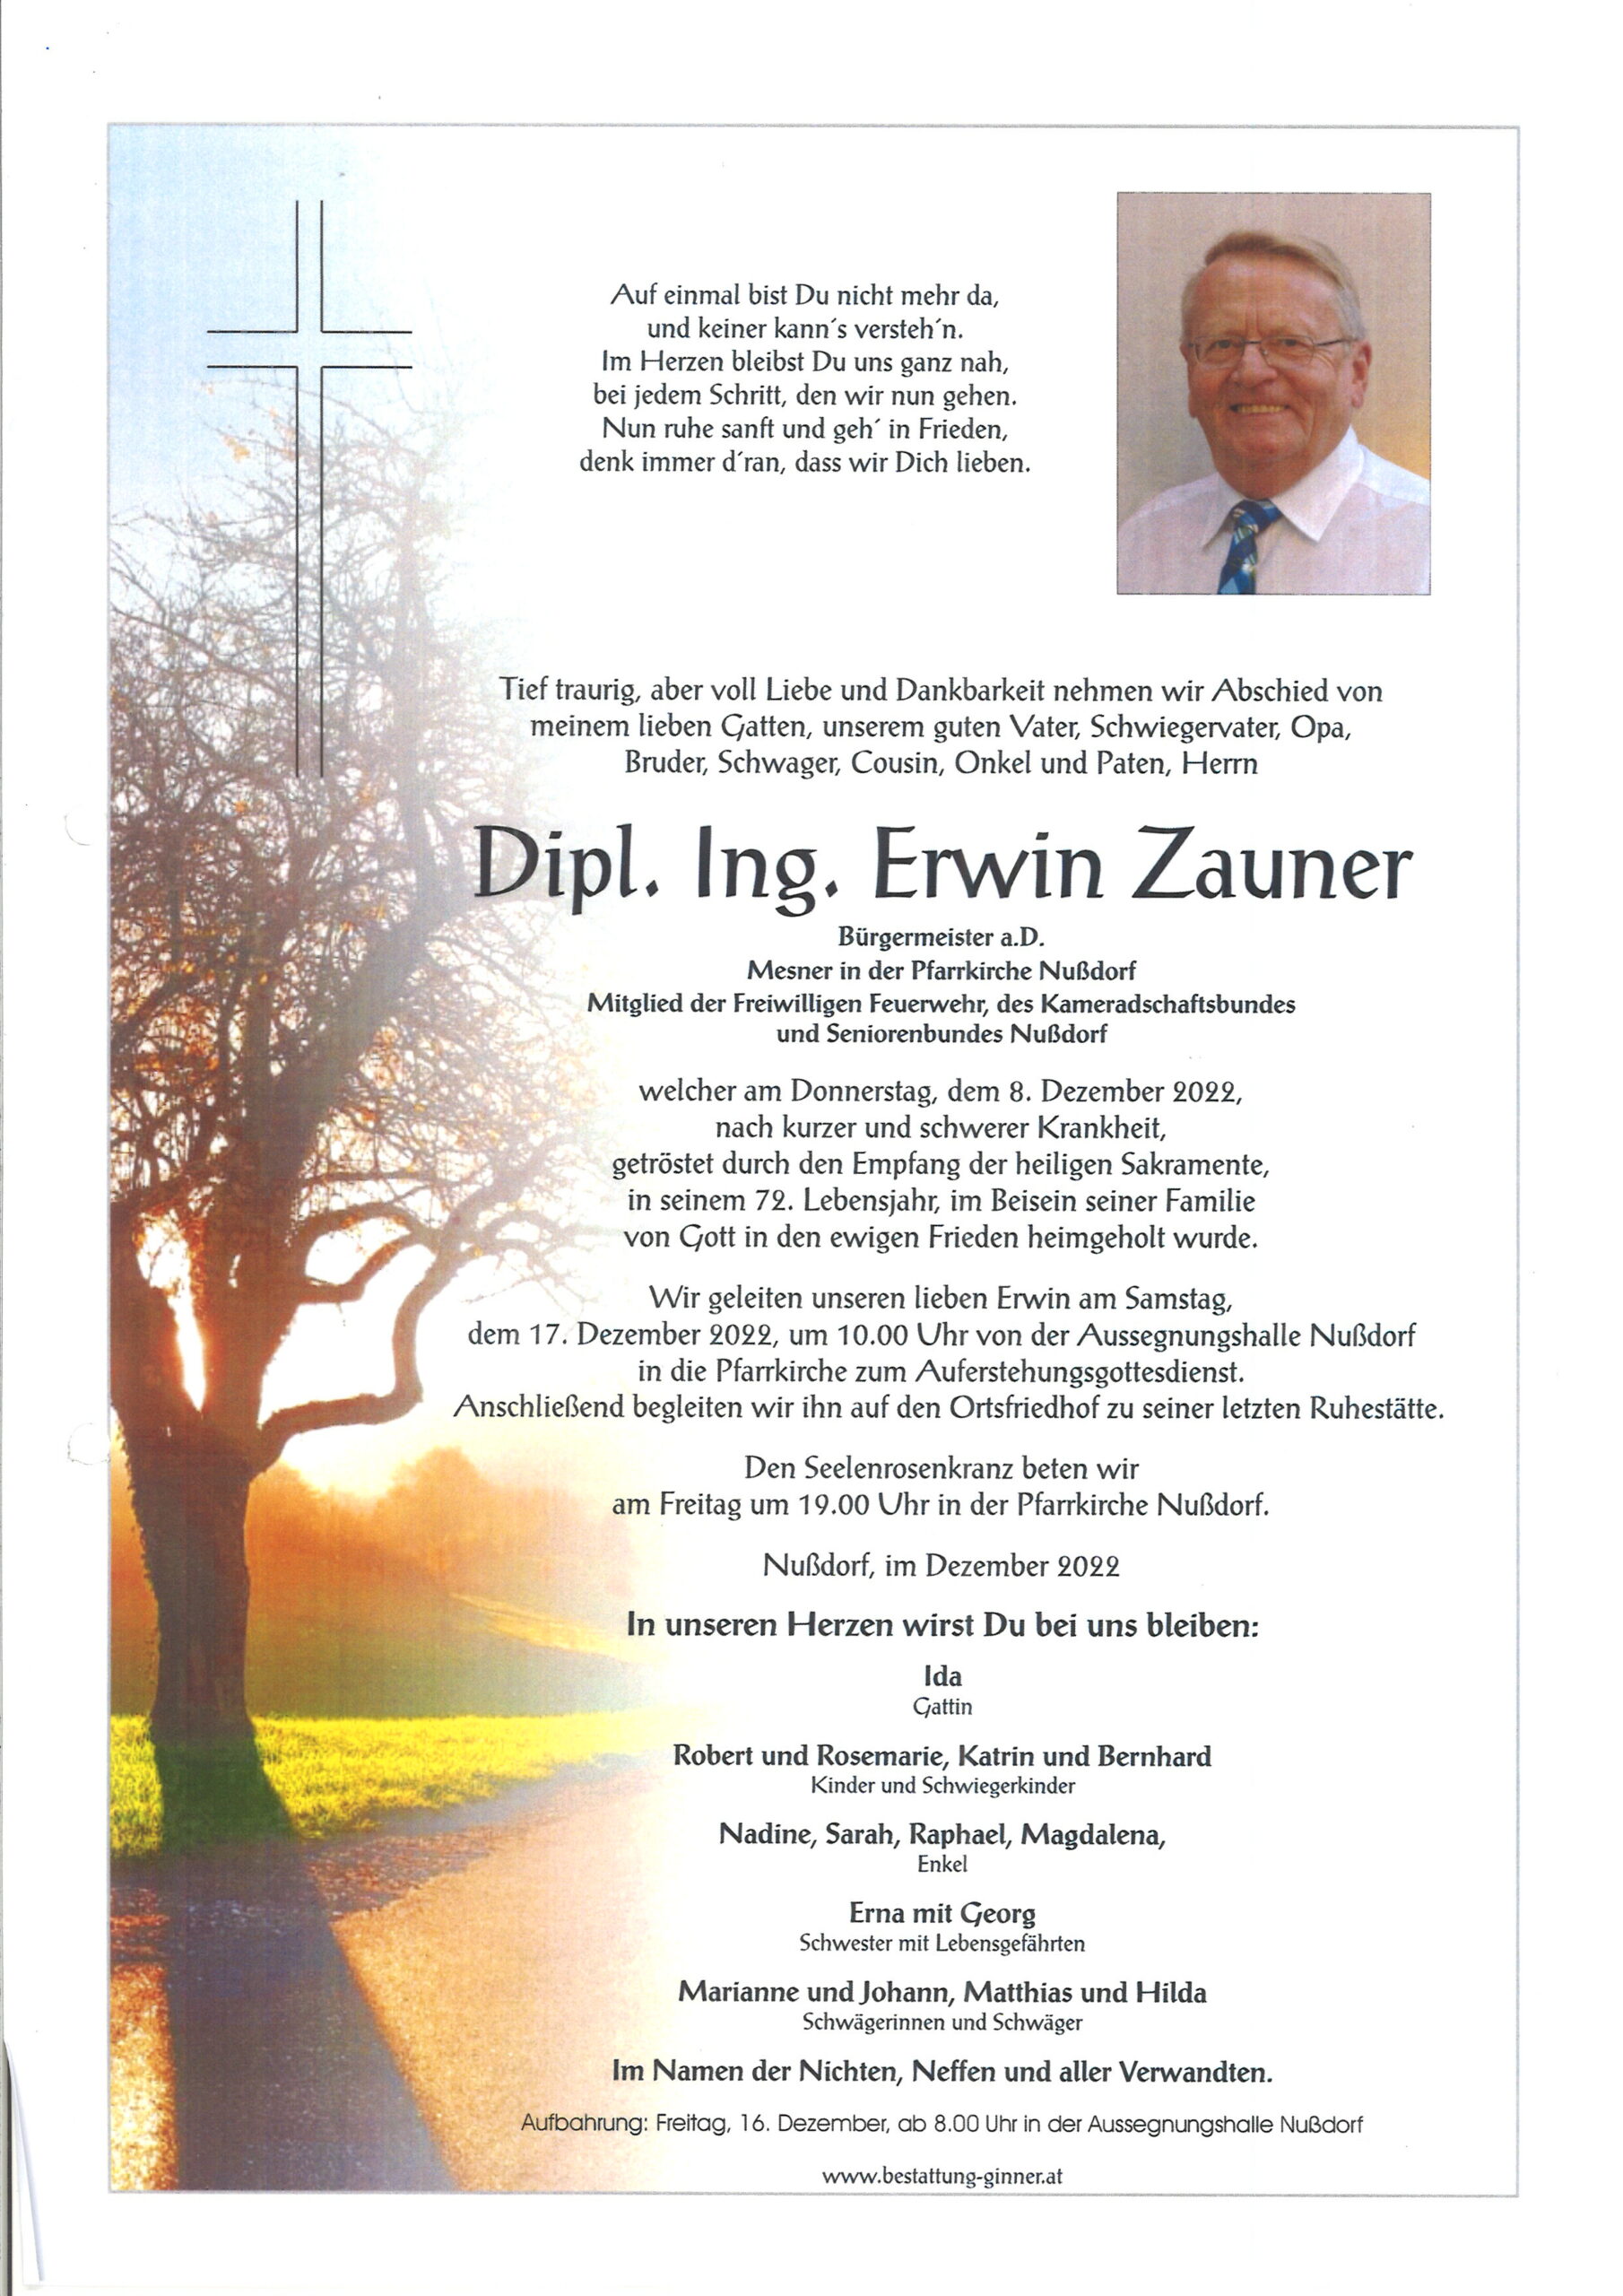 17. Dez. 2022: Begräbnis von Bürgermeister a. D. Dipl. Ing. Erwin Zauner in Nußdorf